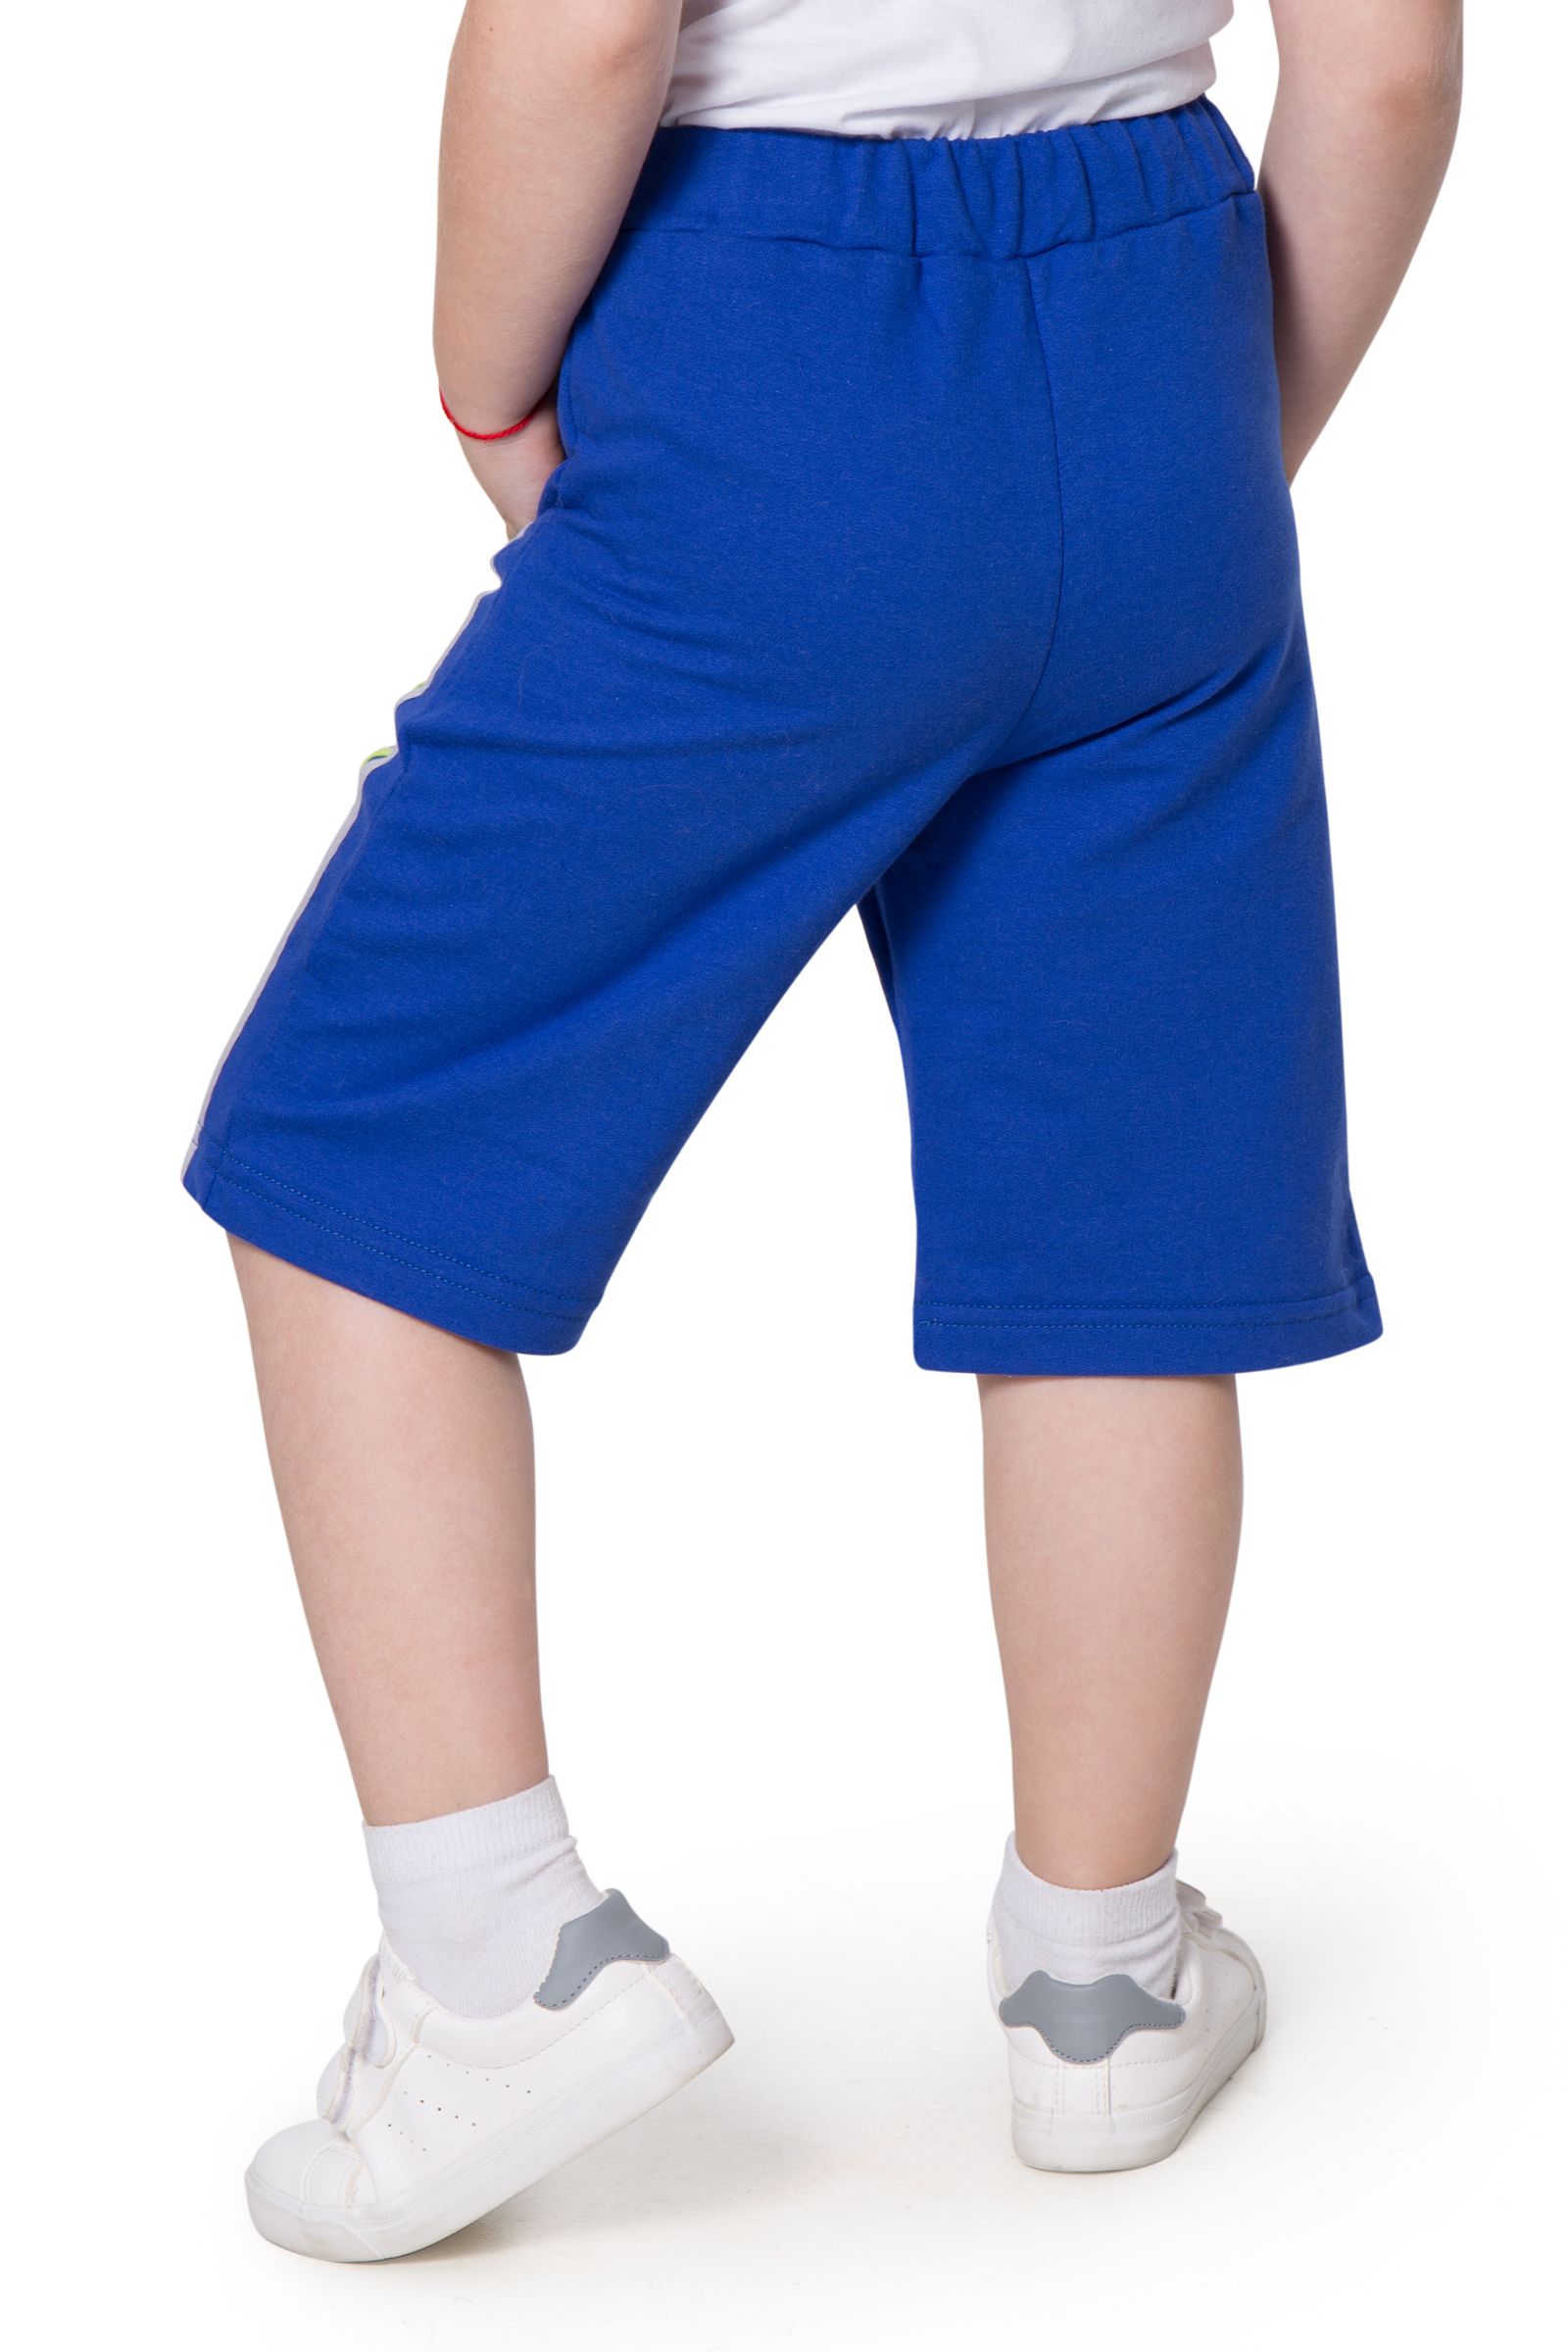 Шорты-ШР05-3186 оптом от производителя детской одежды 'Алёна'